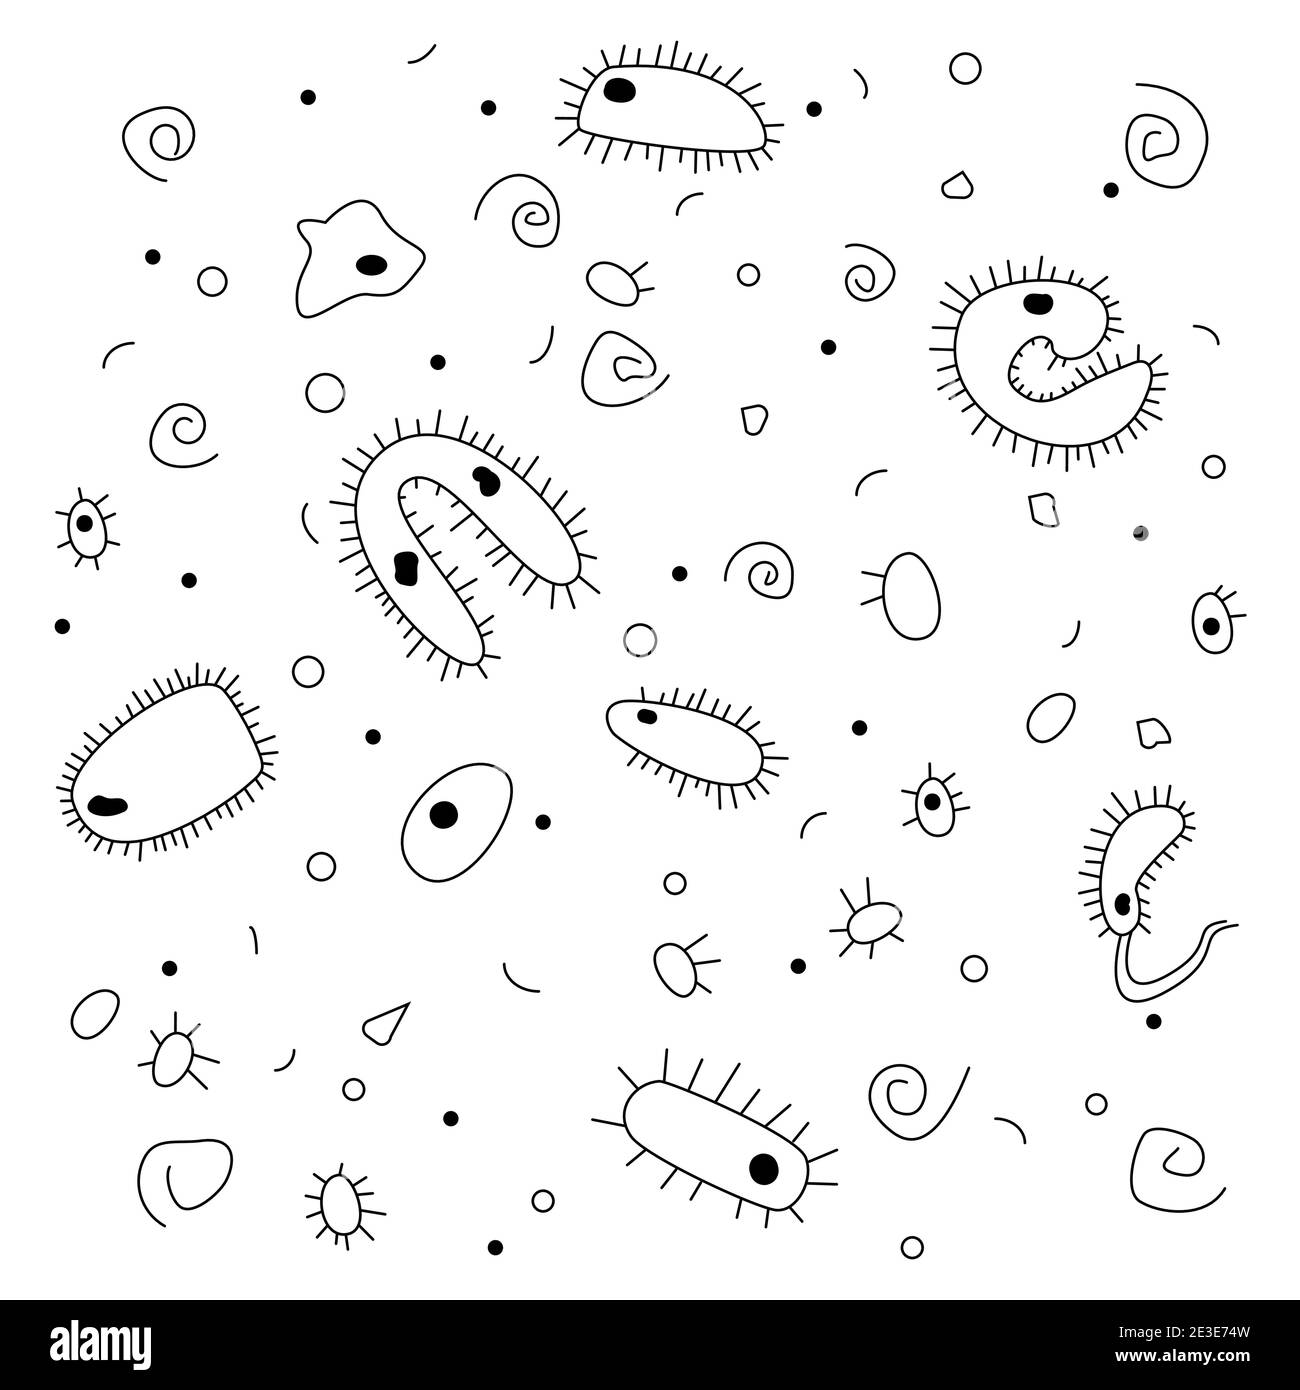 Estilo de fideos, dibujo dibujado a mano. Bacterias negras y blancas sobre fondo blanco. Vista bajo el microscopio. Ilustración del Vector